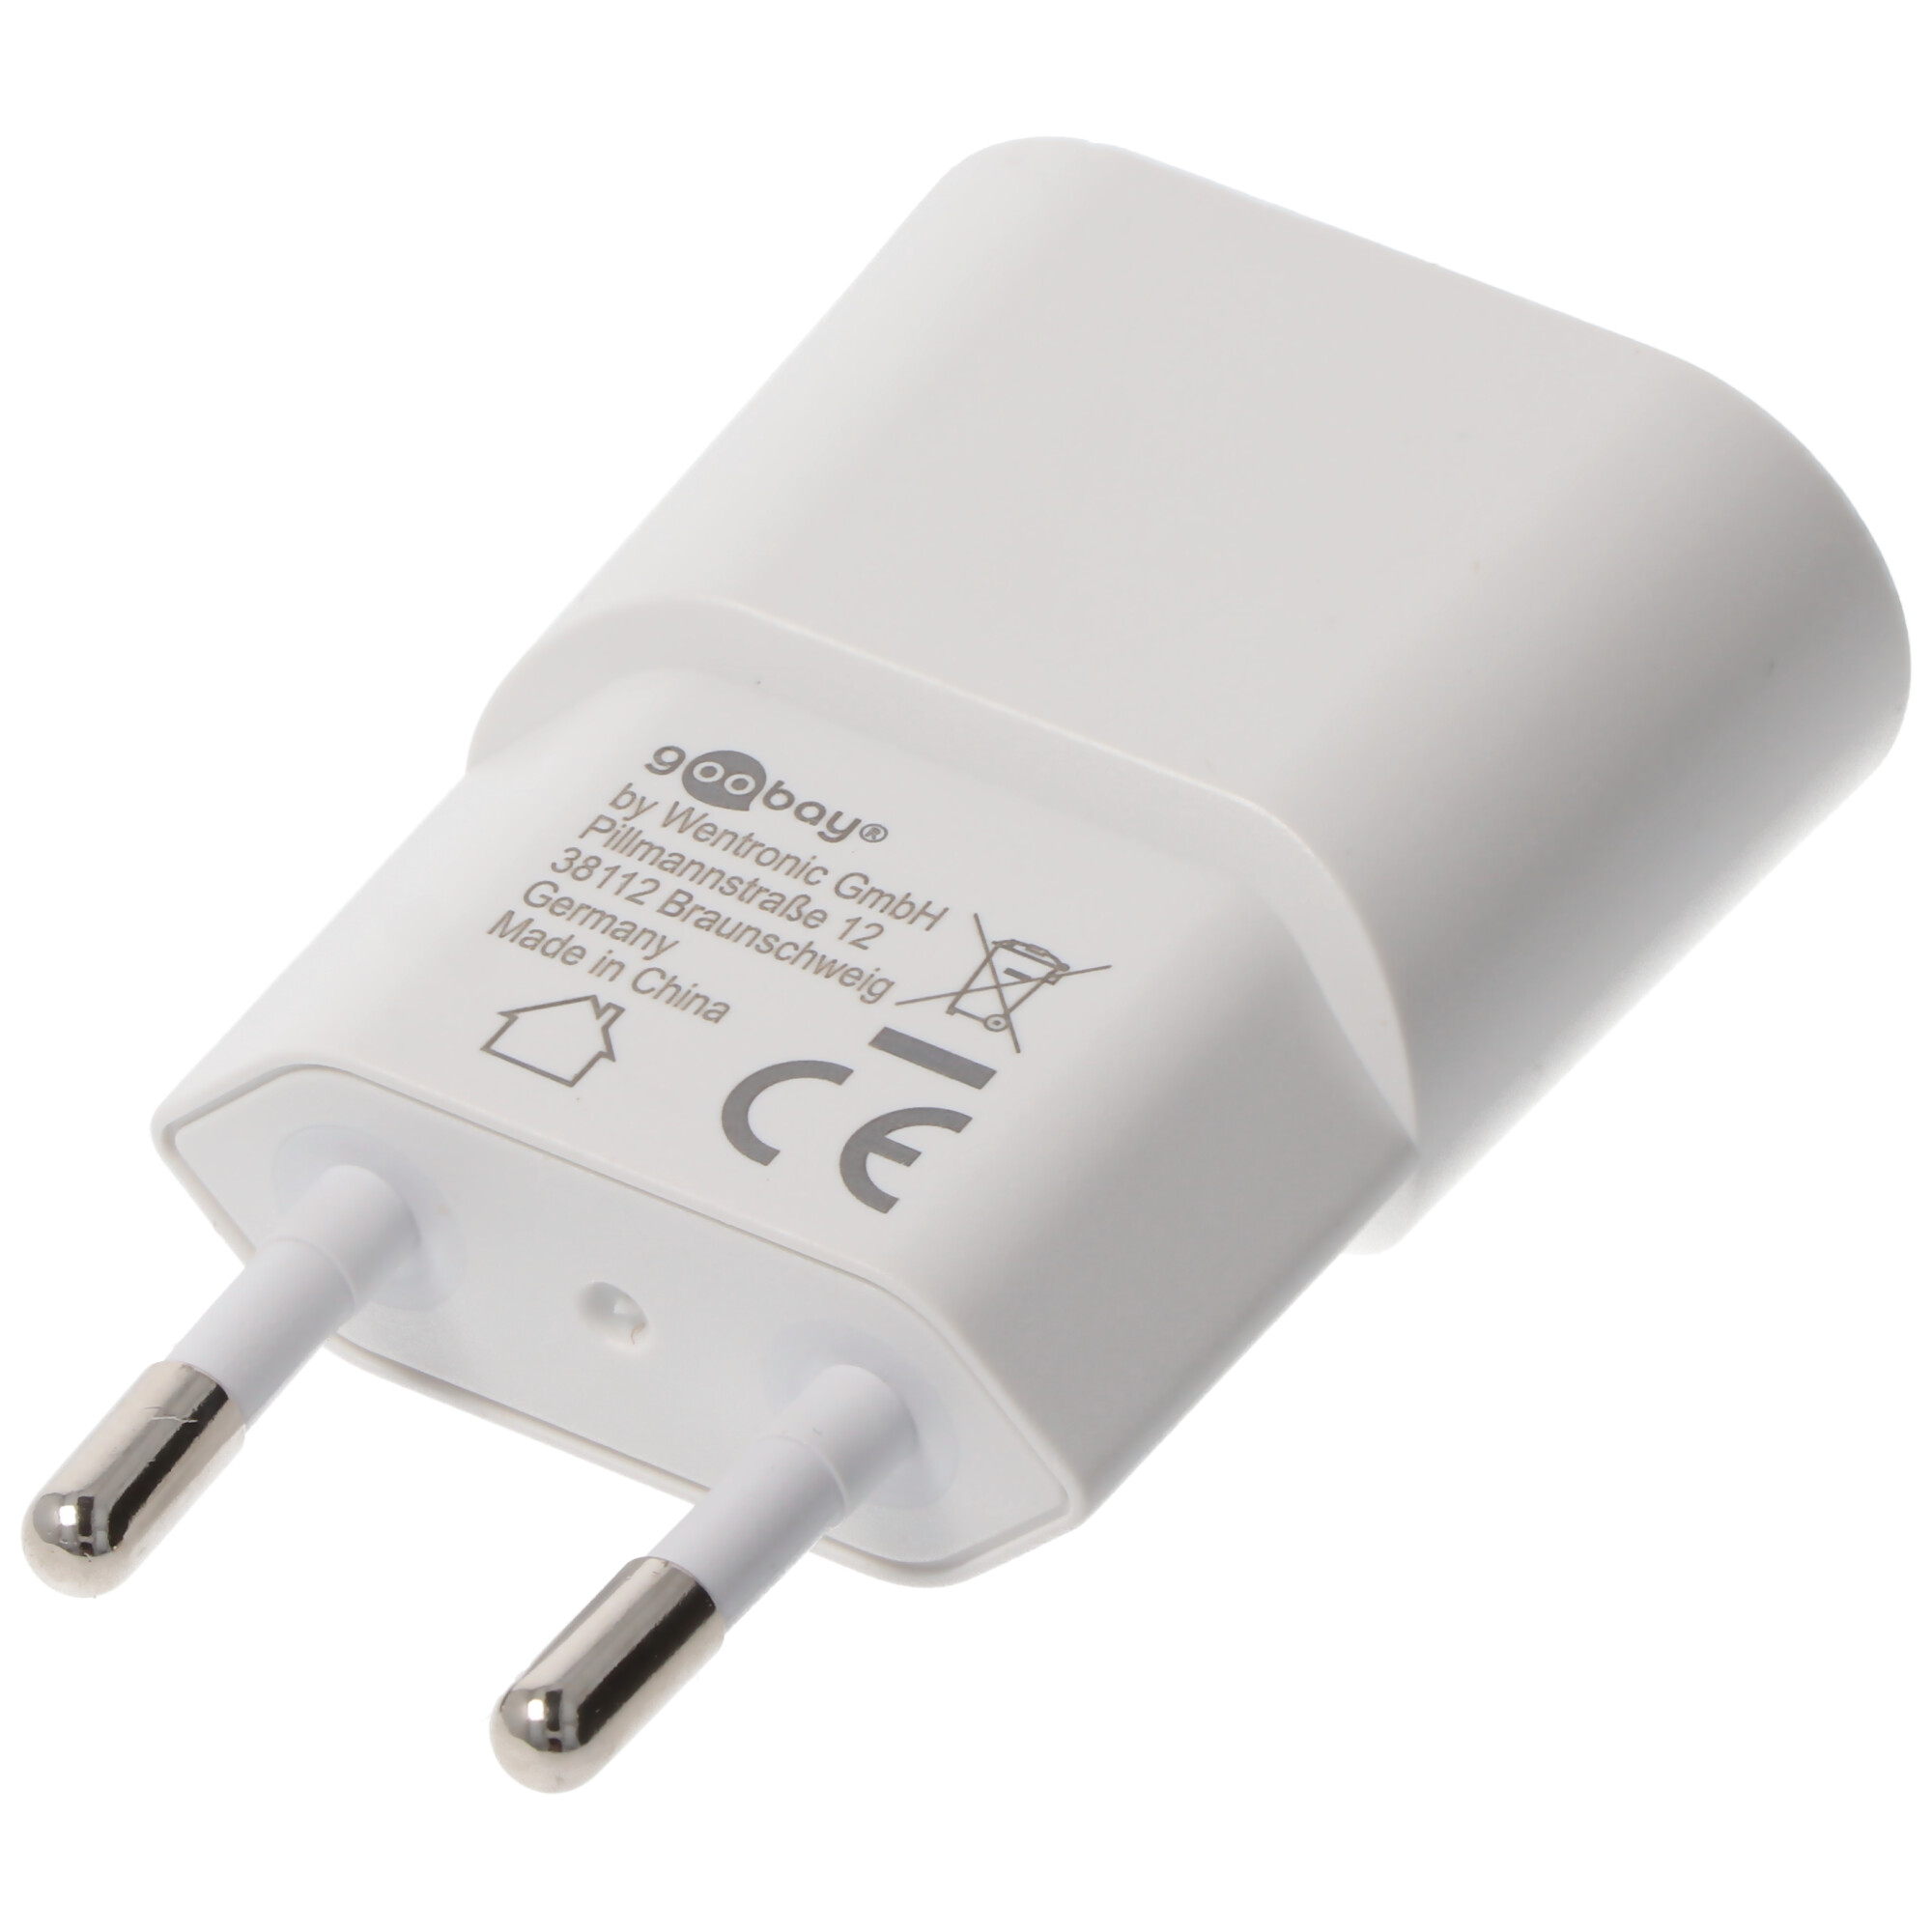 Goobay USB-Ladegerät (5W) weiß - kompaktes USB-Netzteil mit 1xUSB Anschluss